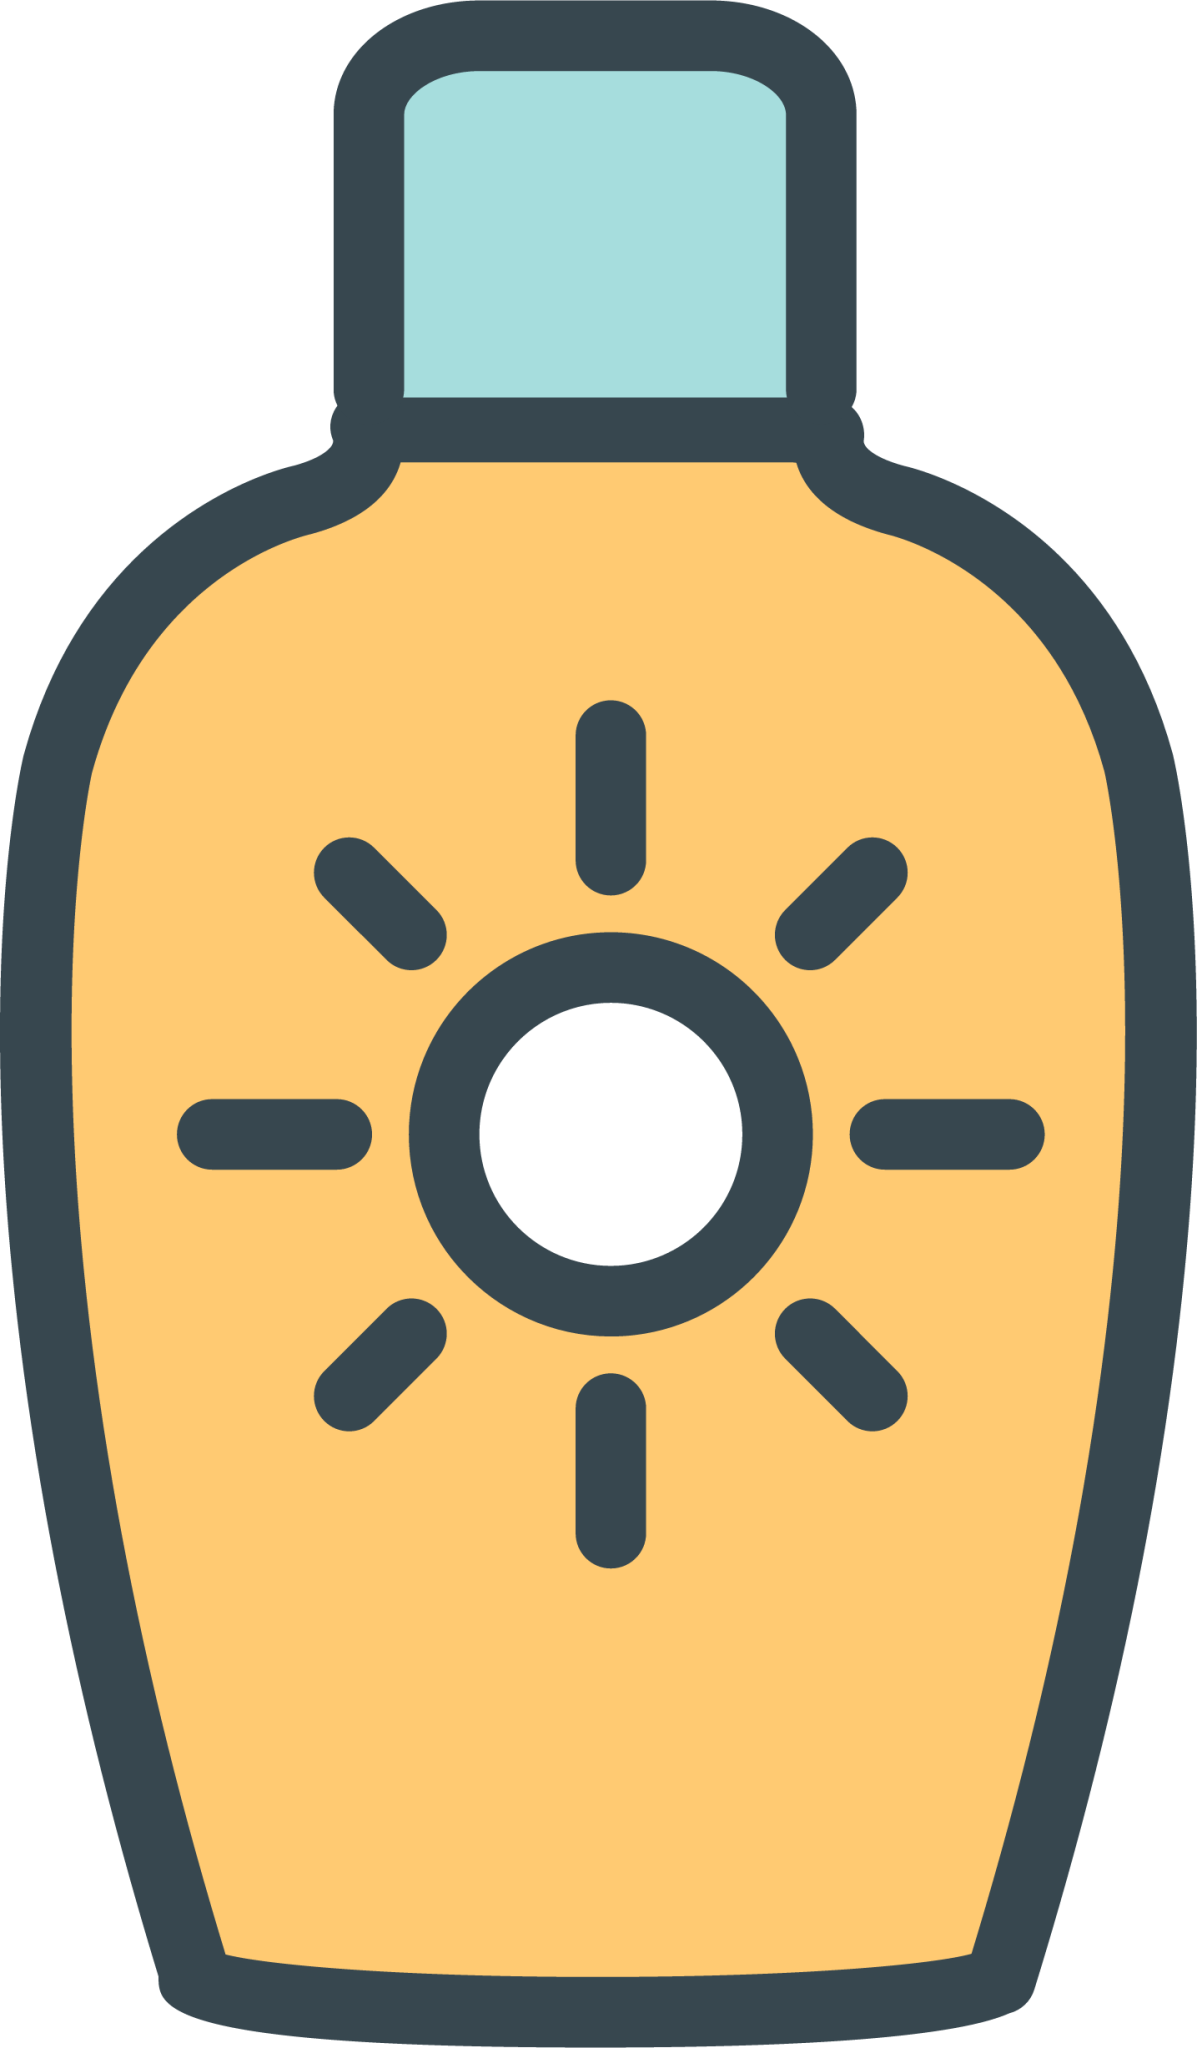 sun protection icon